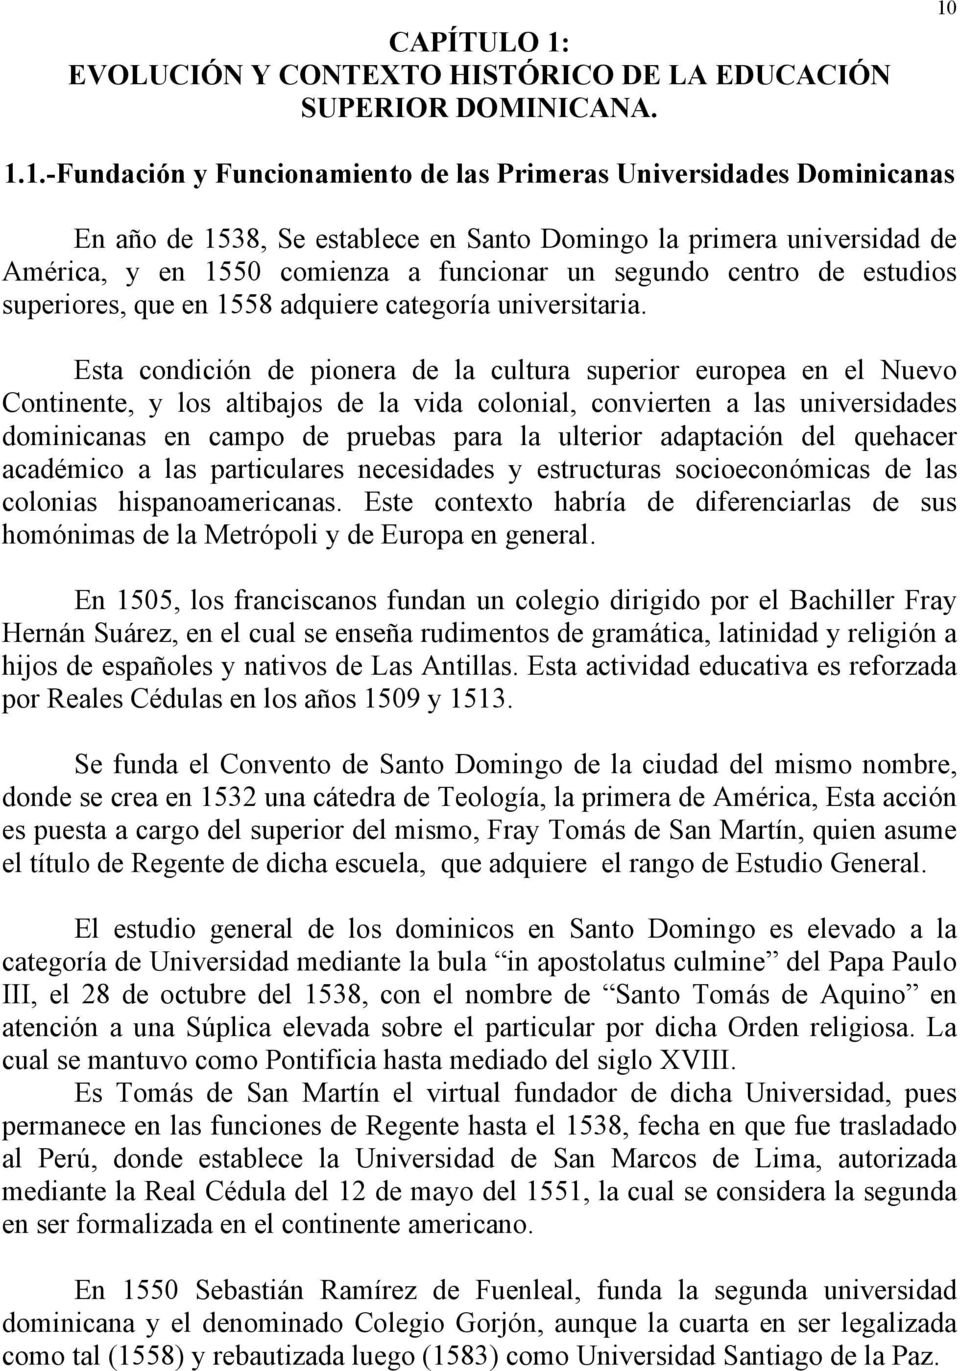 1.1.-Fundación y Funcionamiento de las Primeras Universidades Dominicanas En año de 1538, Se establece en Santo Domingo la primera universidad de América, y en 1550 comienza a funcionar un segundo